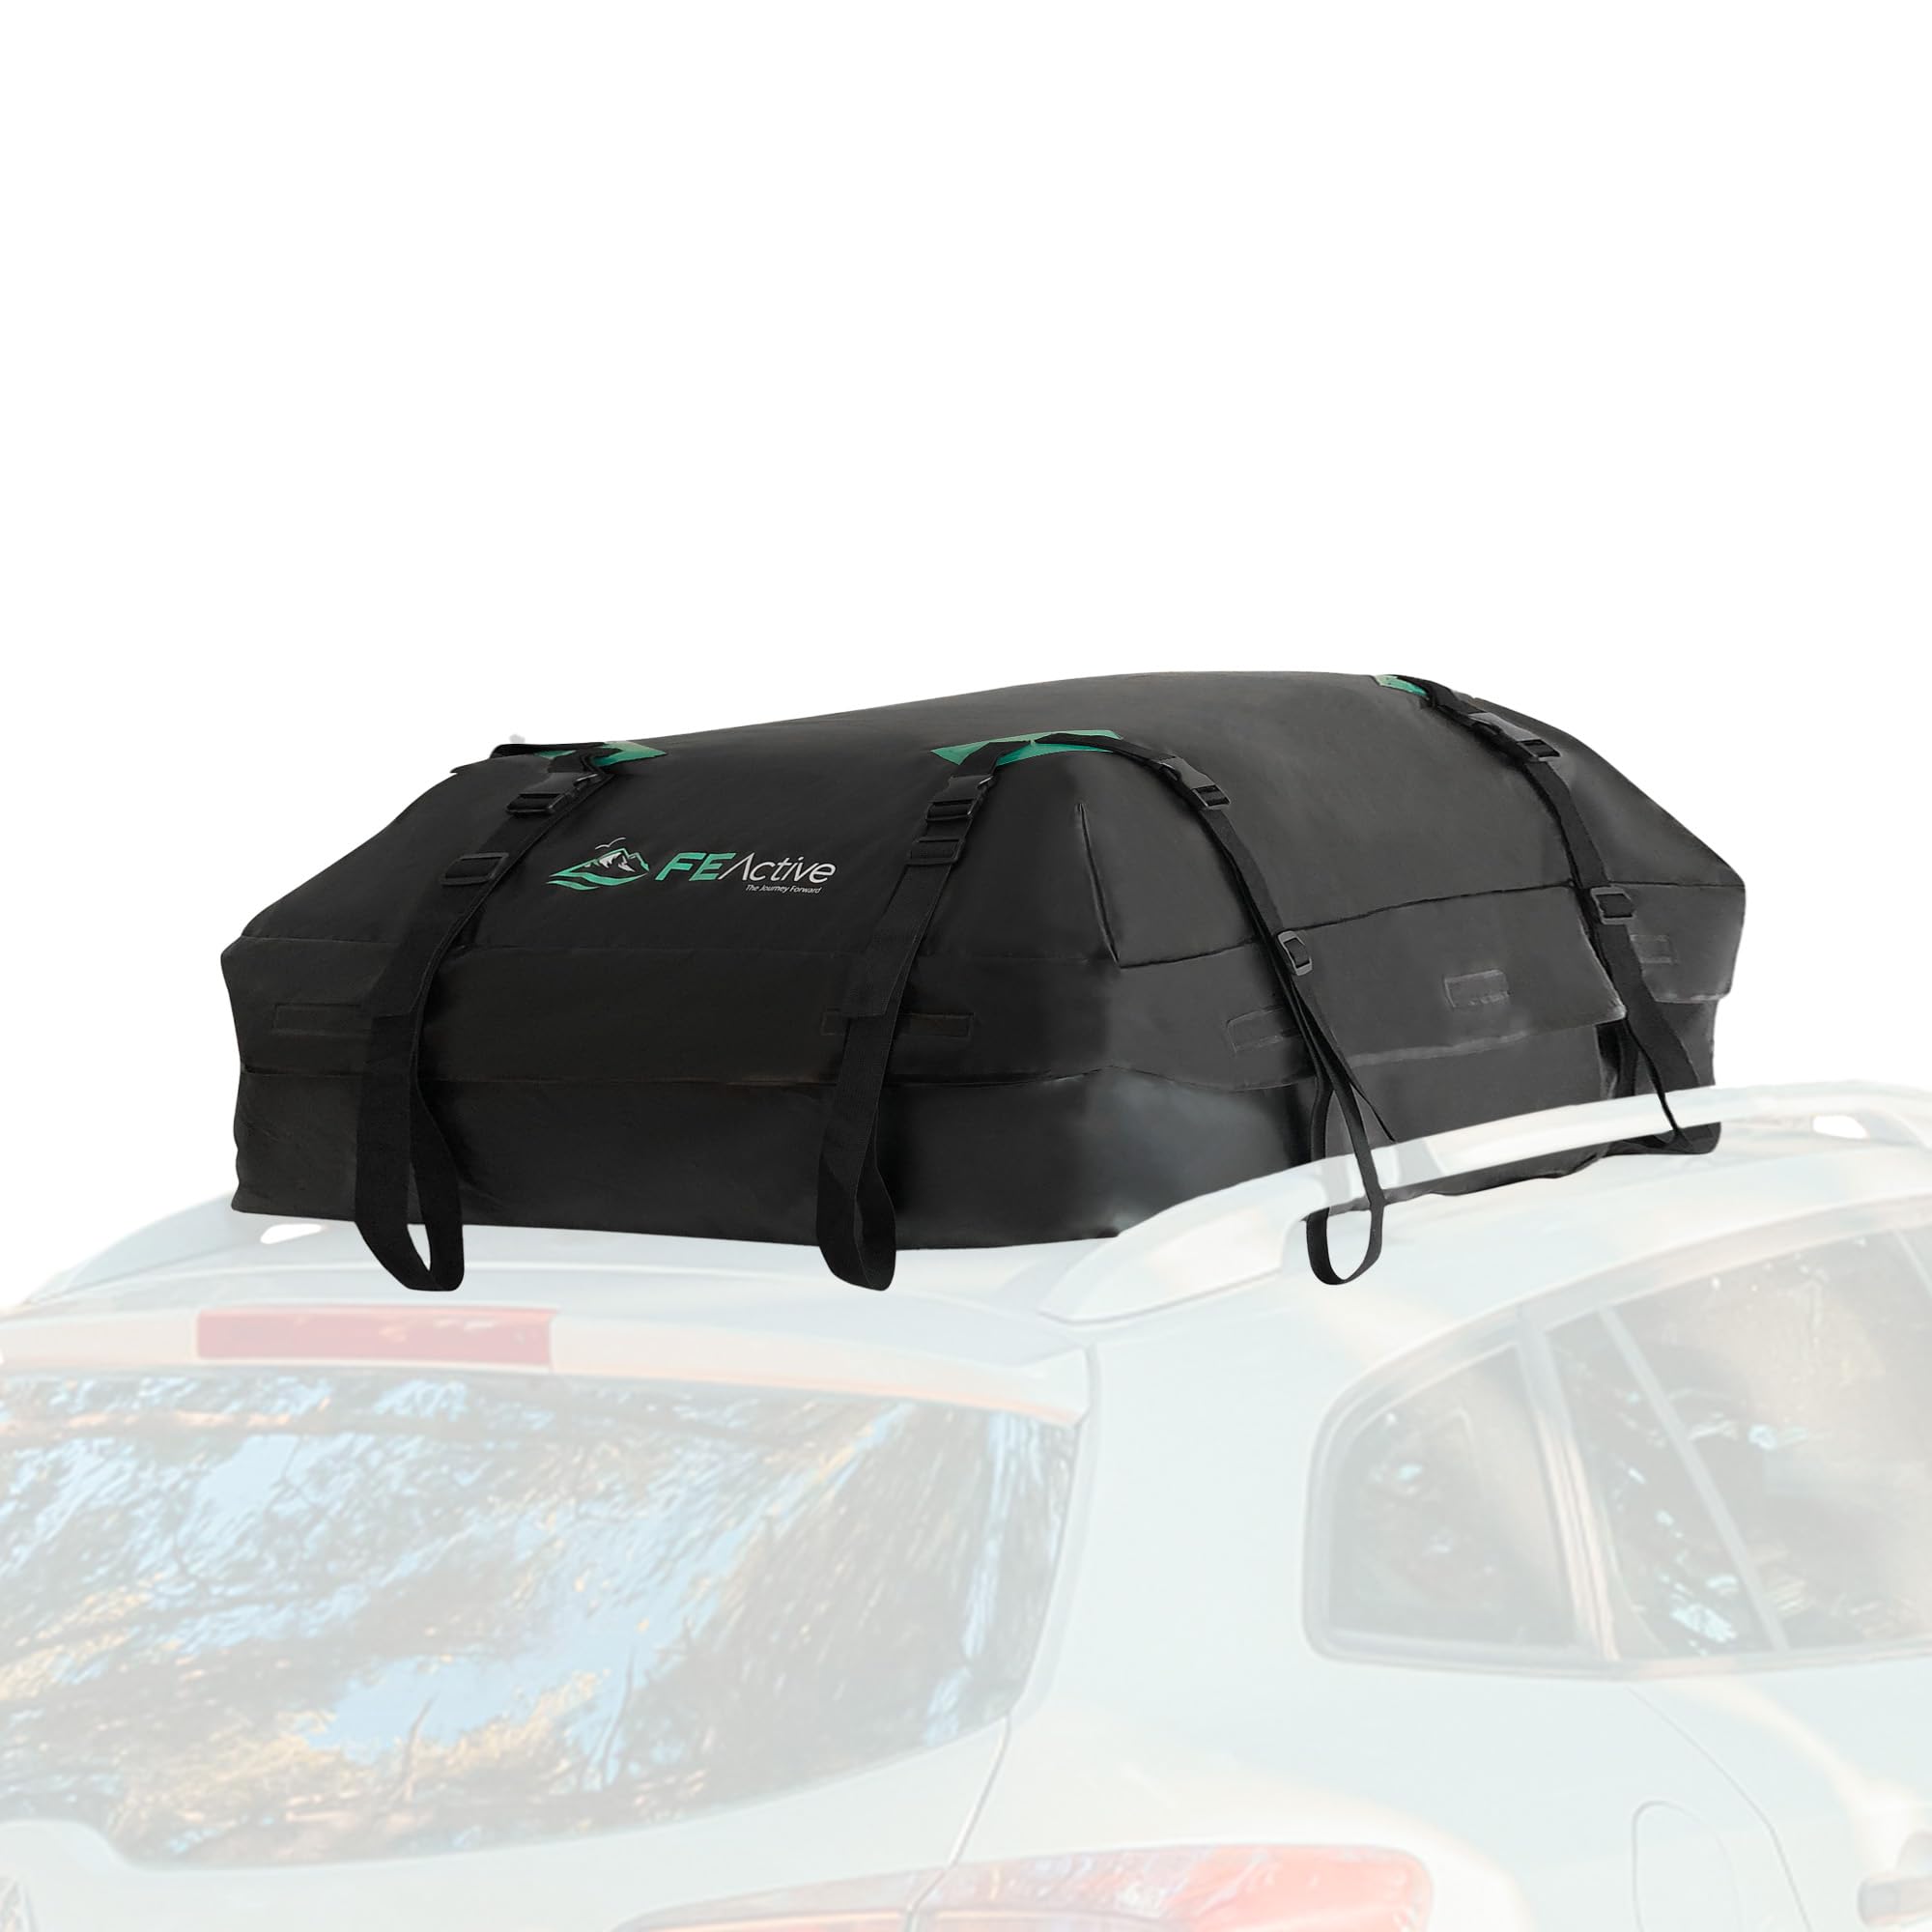 FE Active Dachgepäckträger Tasche Dachkoffer – 428L 100% Wasserfester KFZ-Gepäckträger mit extra breiten Spanngurten, wasserdichte Dachtasche für mehr Stauraum, kompakt faltbare Gepäcktasche fürs Auto